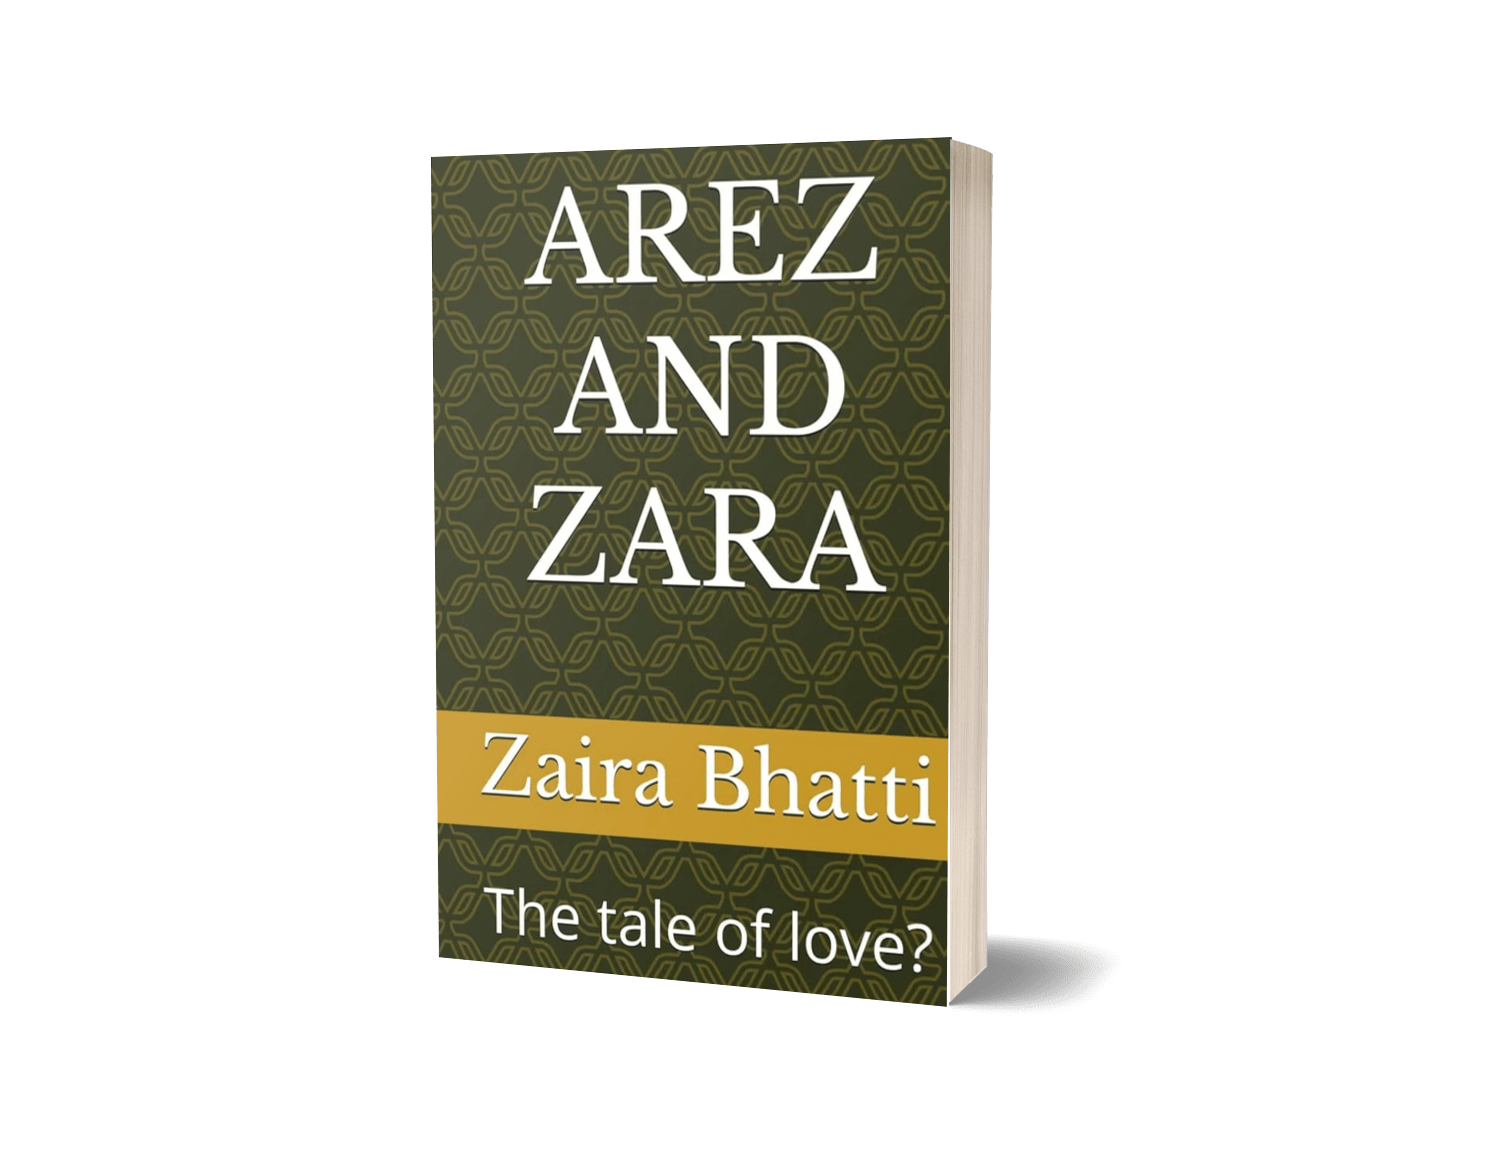 Arez and Zara by Zaira Bhatti"